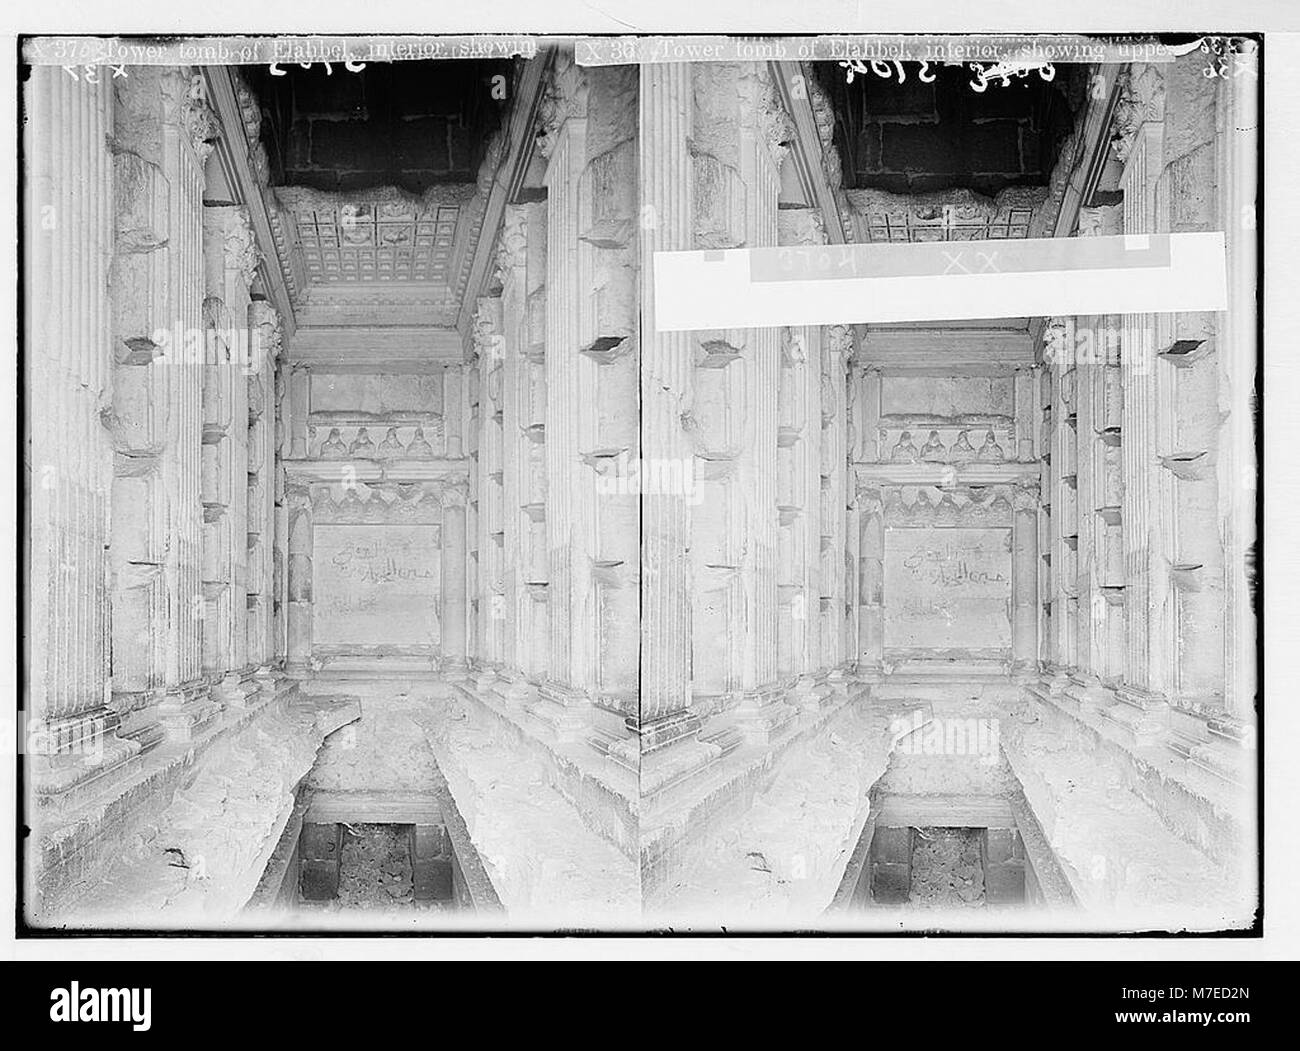 Palmyra. Turm Grab von Elahbel. Int (erior), in der die Decke, Pilaster und Grab Nischen; unterer Bereich mit Krypta und geschnitzten Büsten LOC 02868 matpc. Stockfoto